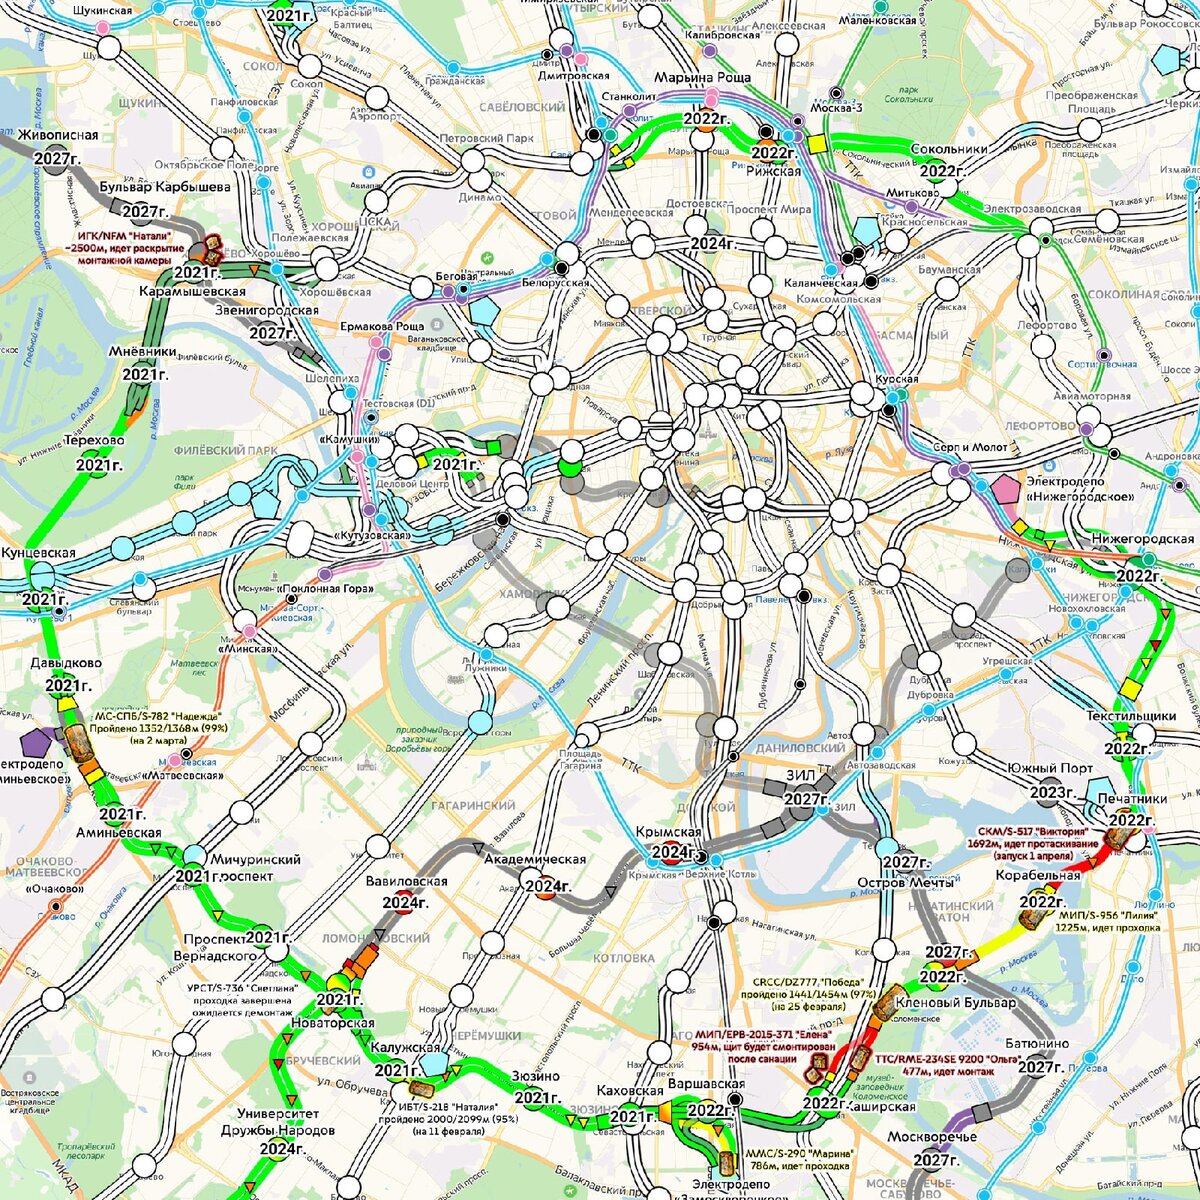 Большая Кольцевая линия метро на карте 2022 Москвы